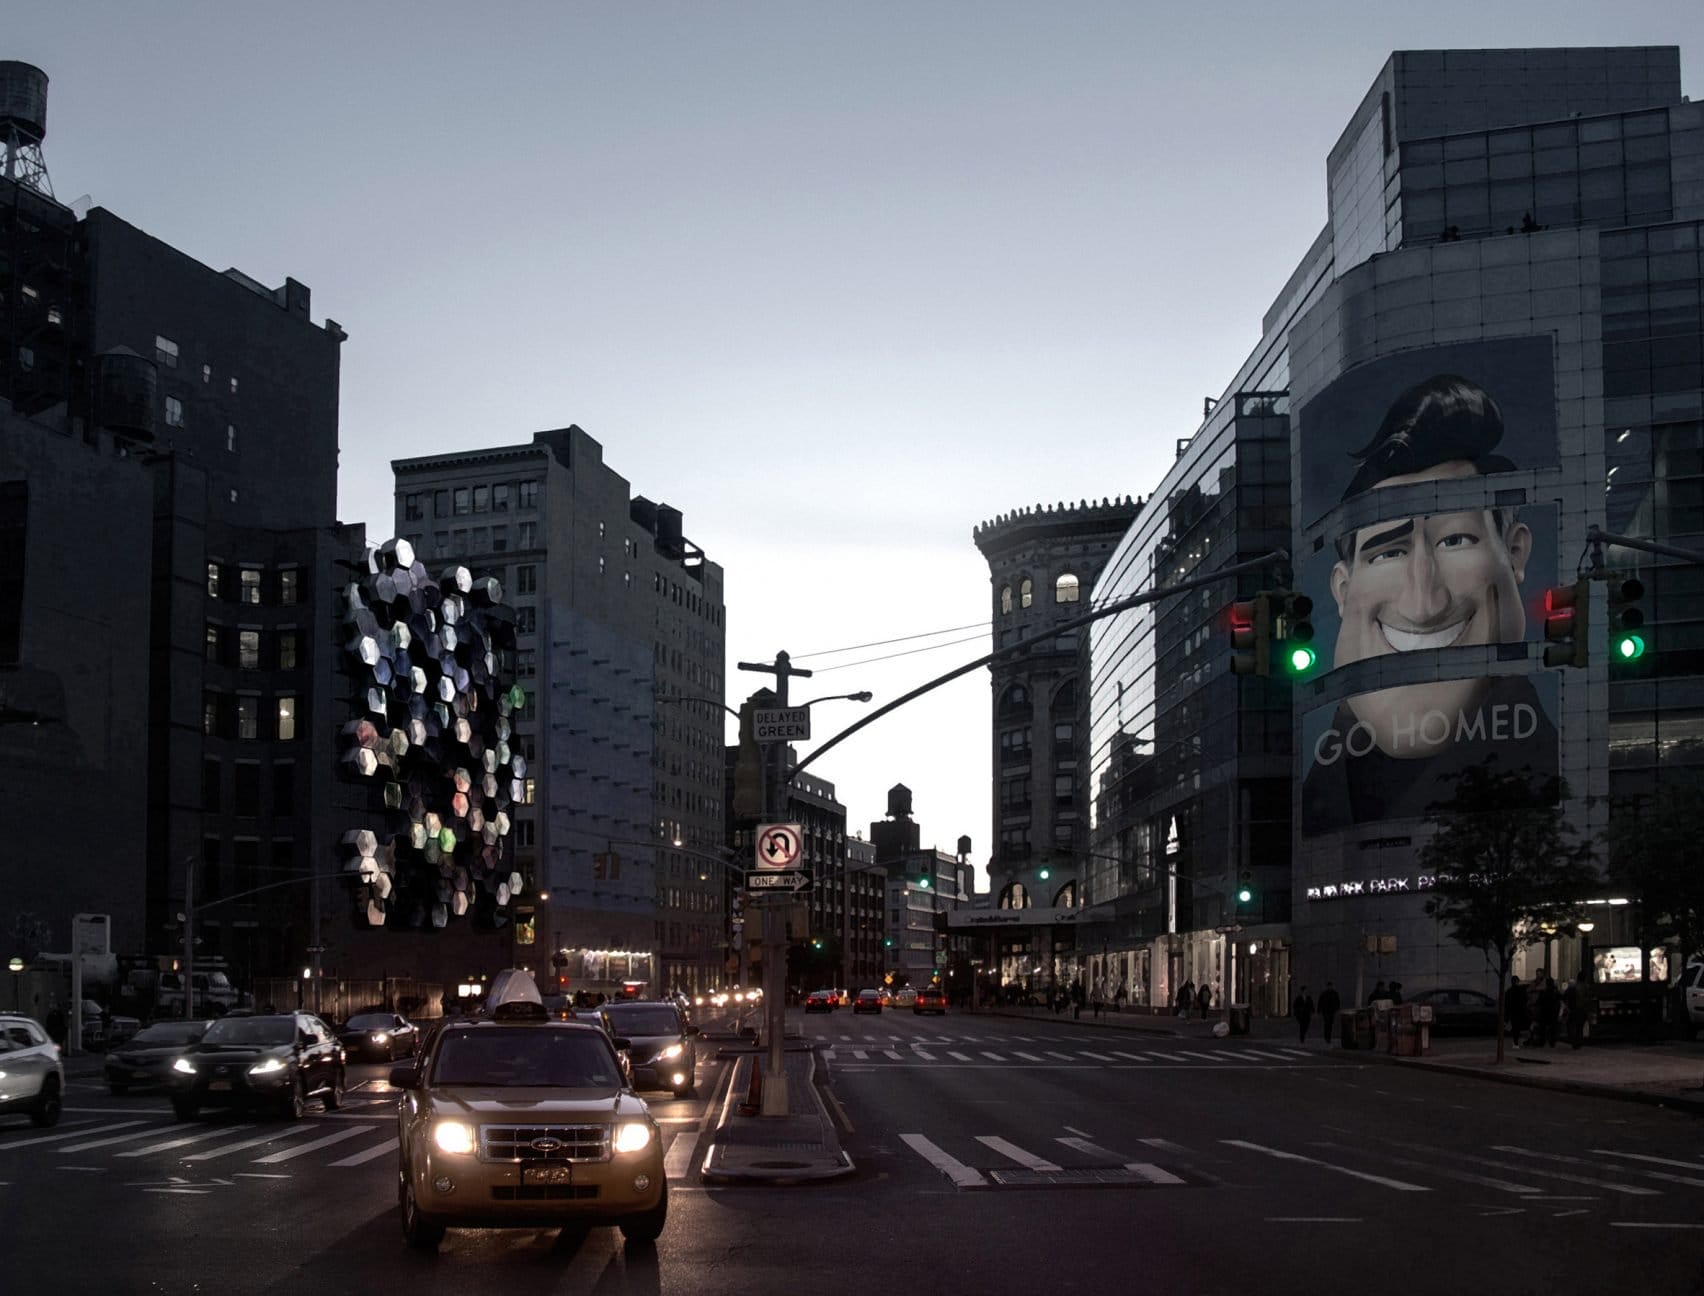 Durante a noite, fachada pode servir como tela para exibição de anúncios. Foto: Framlab.